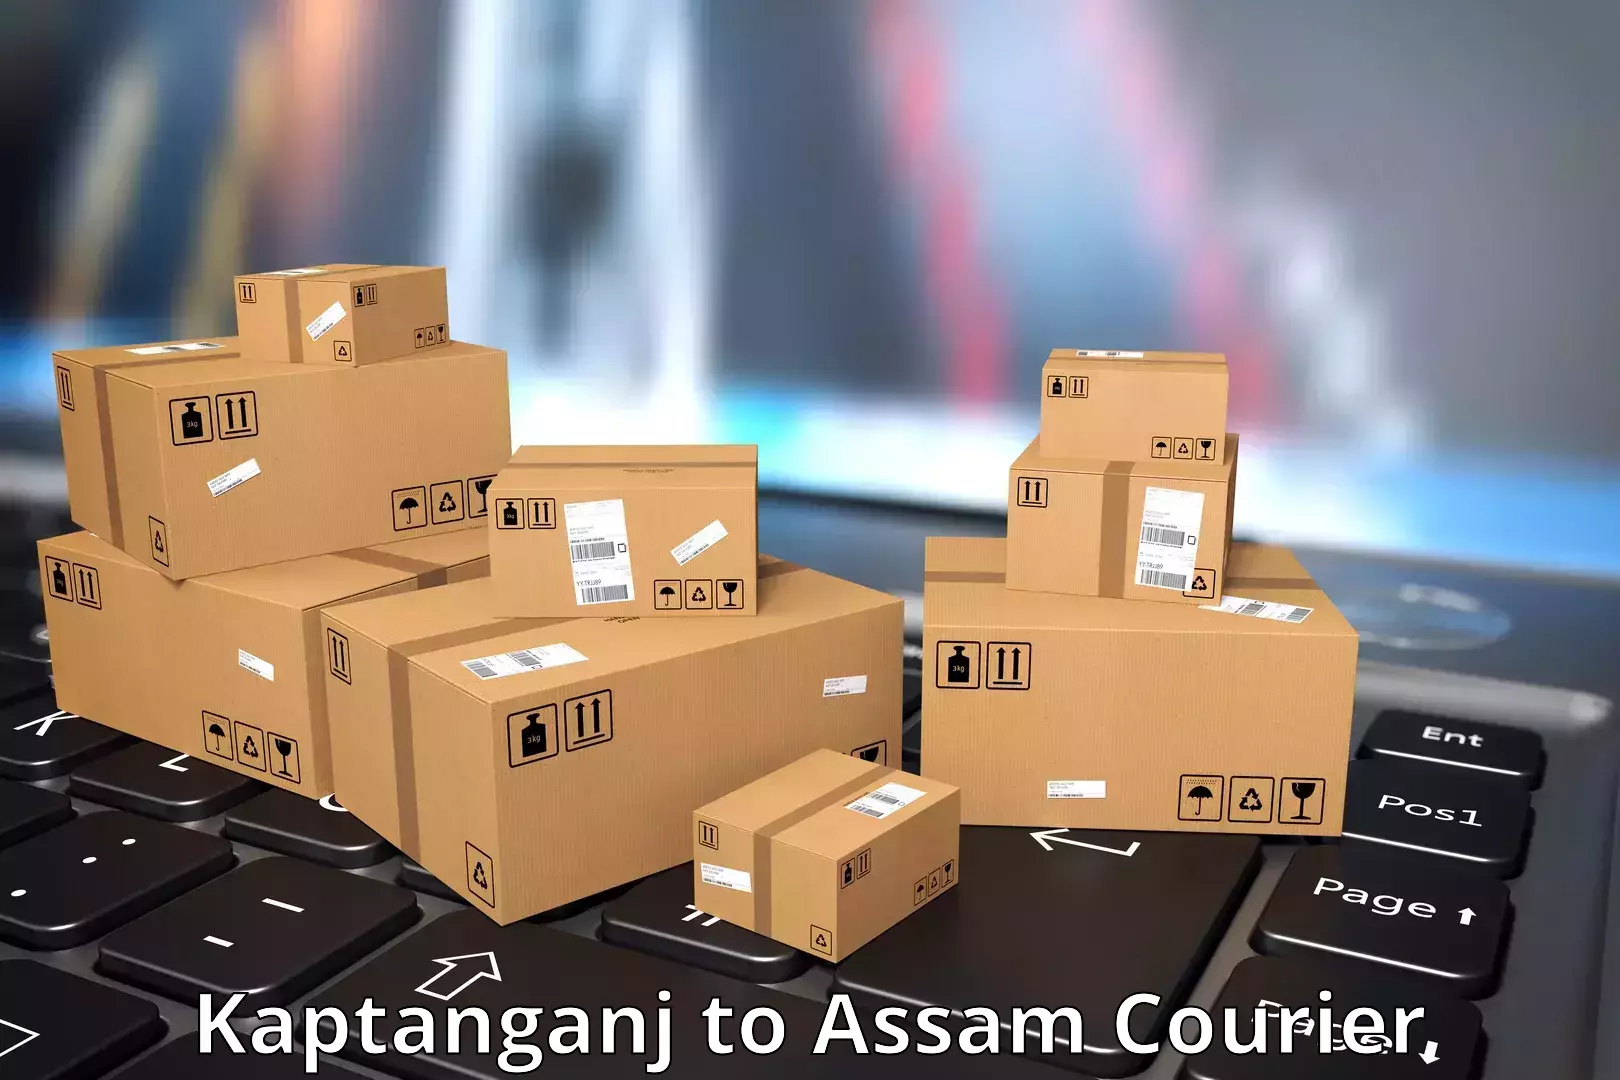 Efficient courier operations Kaptanganj to Dhupdhara